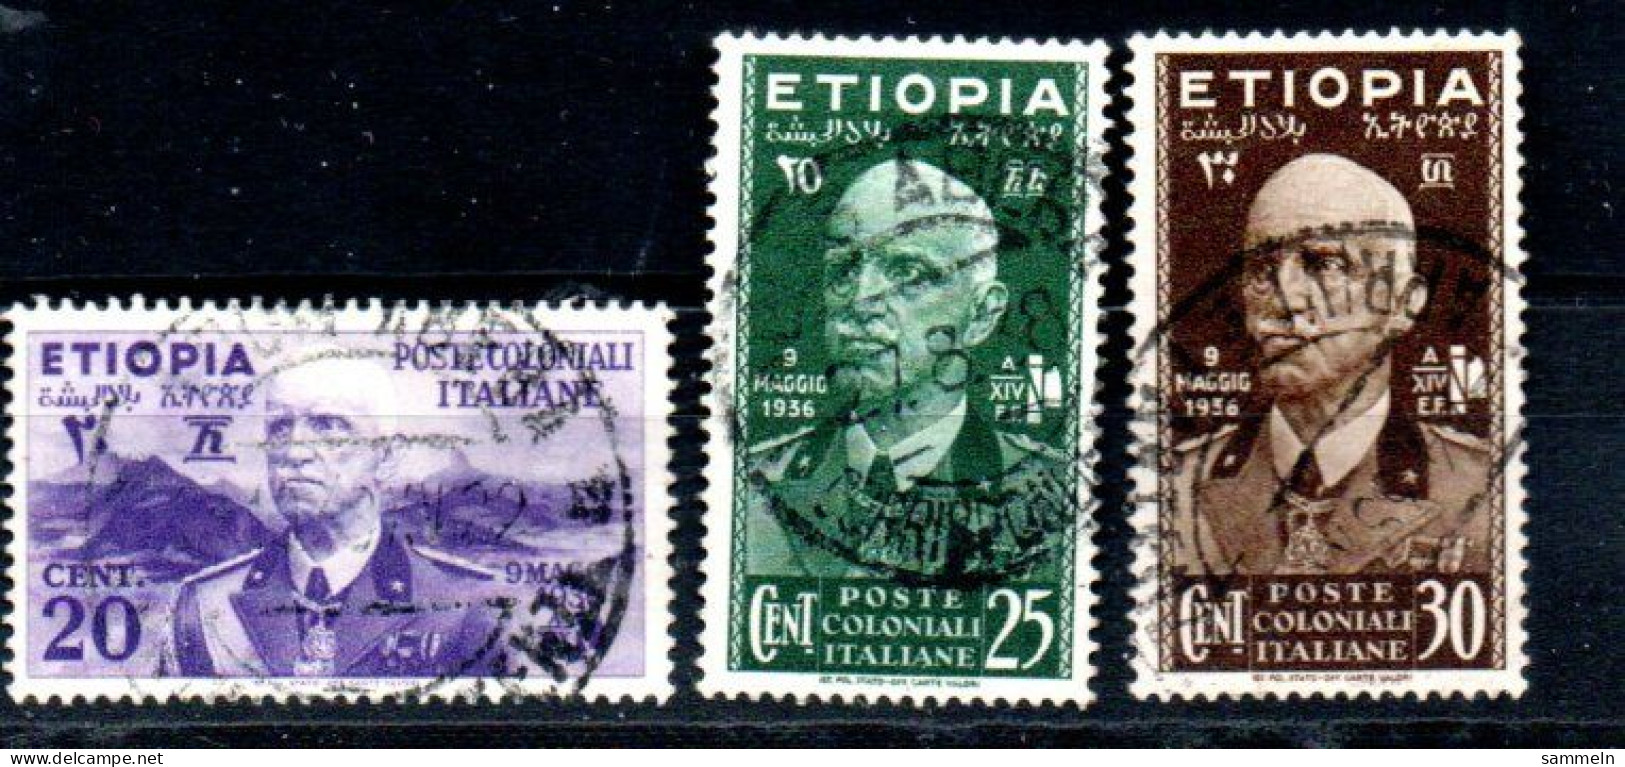 ITALIENISCH-ÄTHIOPIEN 2, 3, 4 Canc Victor Emanuel III Ambe ITALIAN-ETHIOPIE -ETHIOPIA - Ethiopie